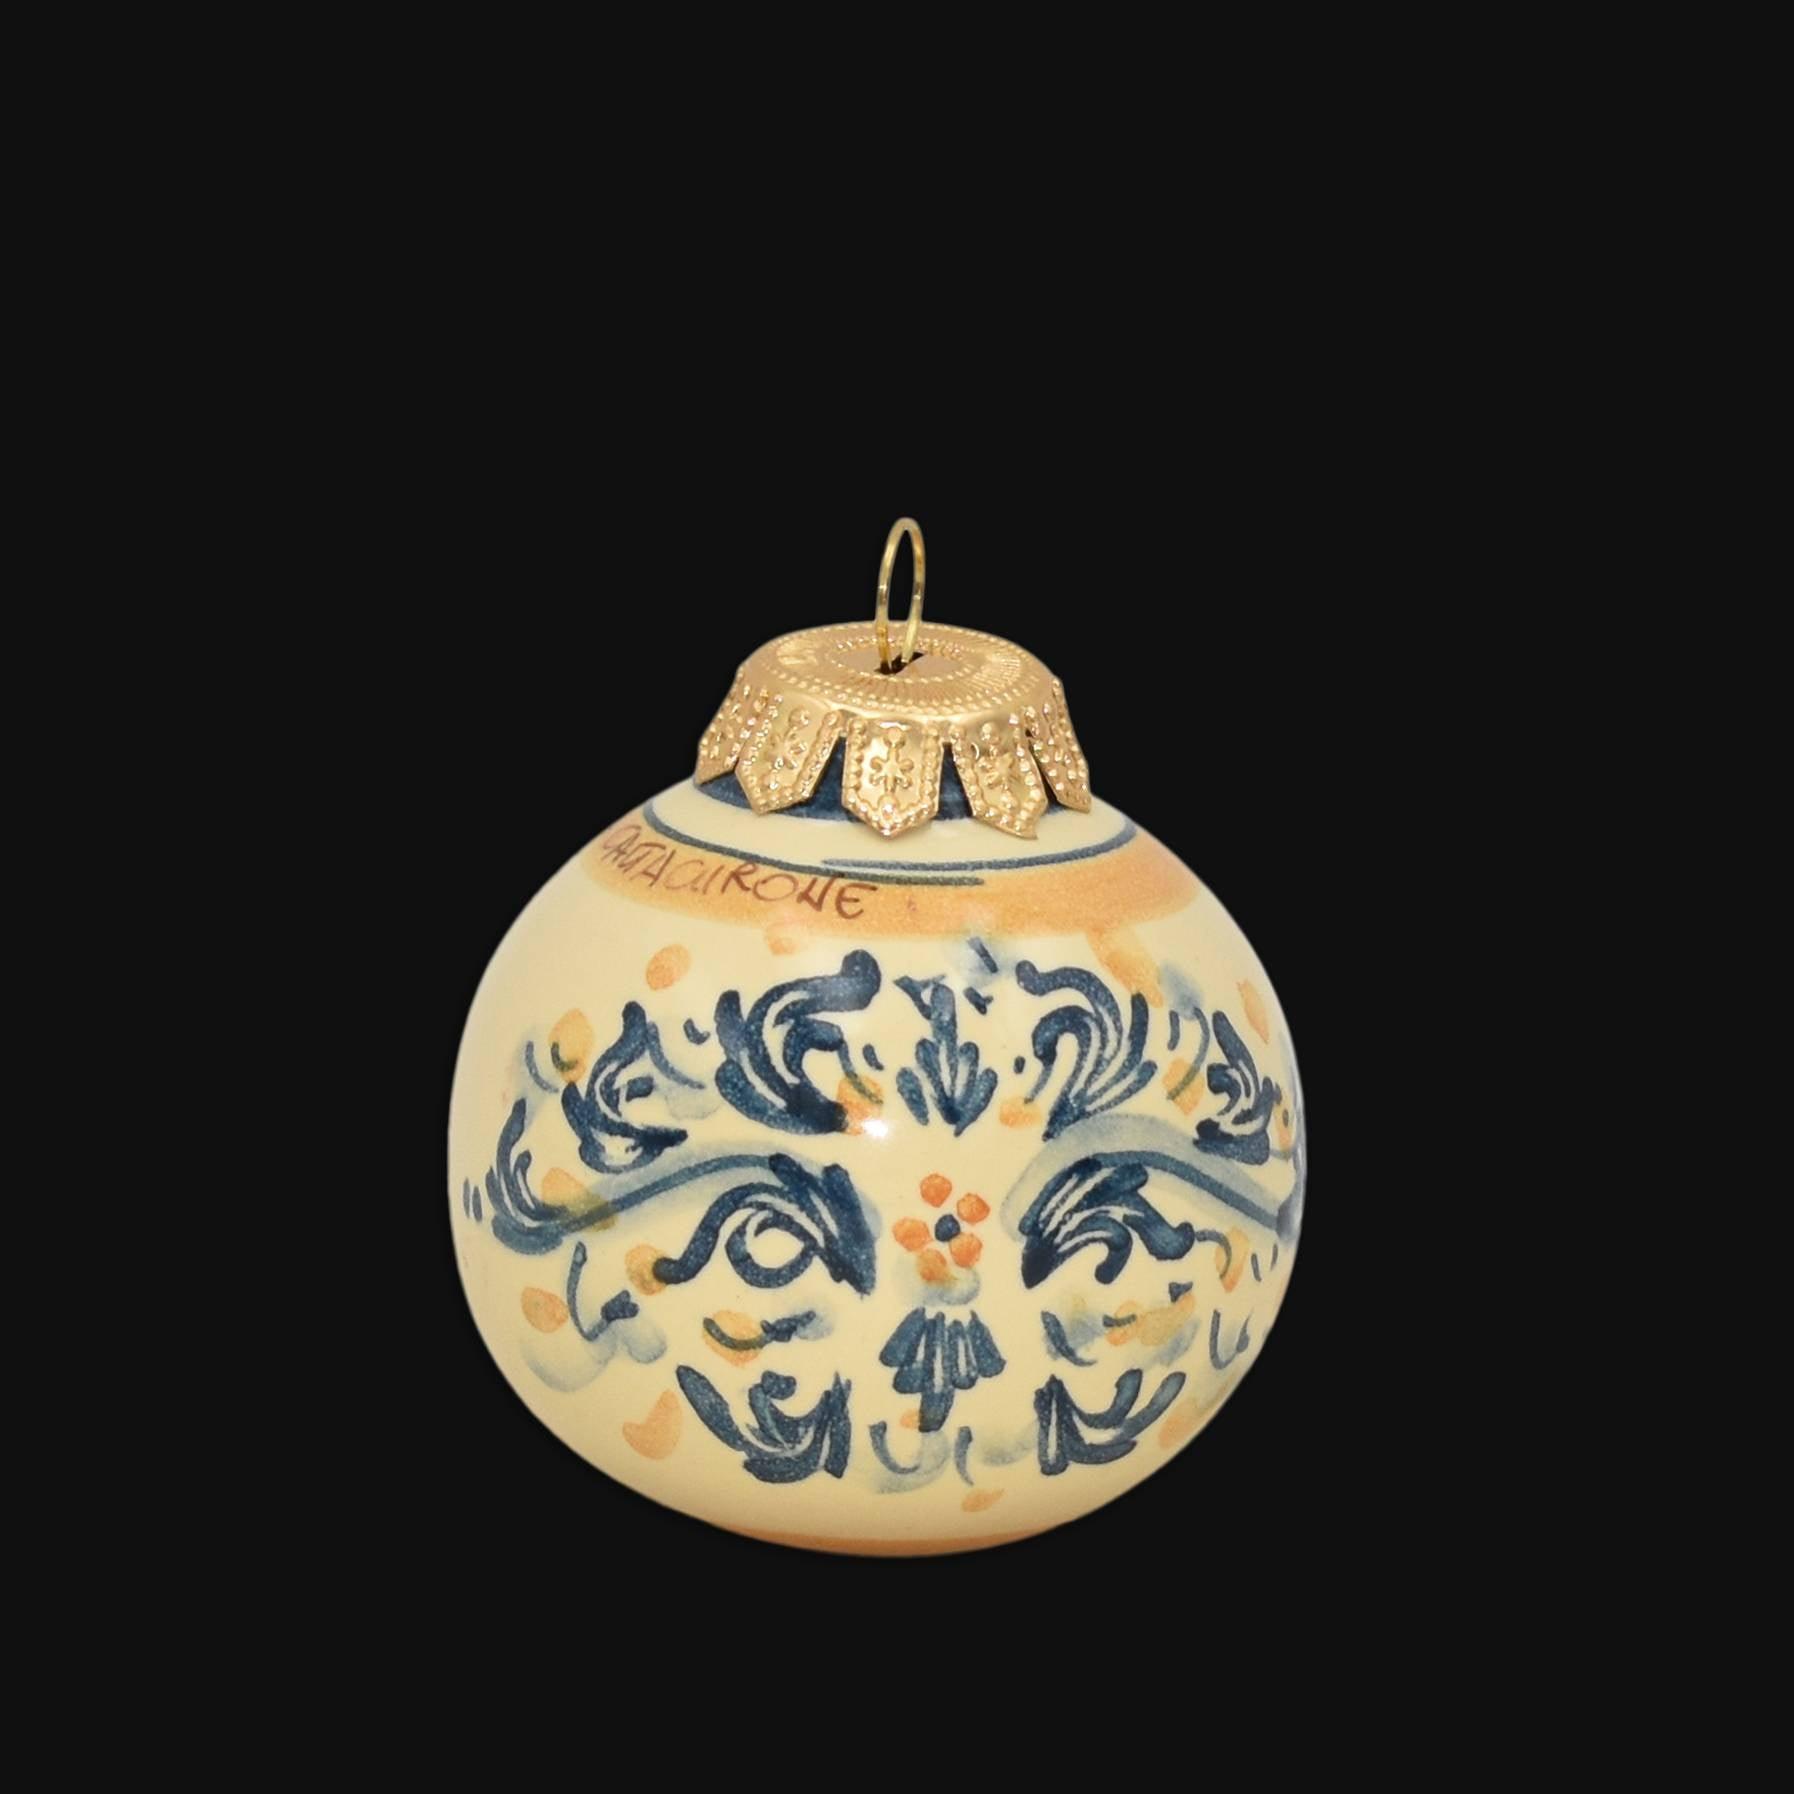 Pallina natalizia Ø 8 s. d'arte blu e arancio - Natale a Caltagirone - Ceramiche di Caltagirone Sofia